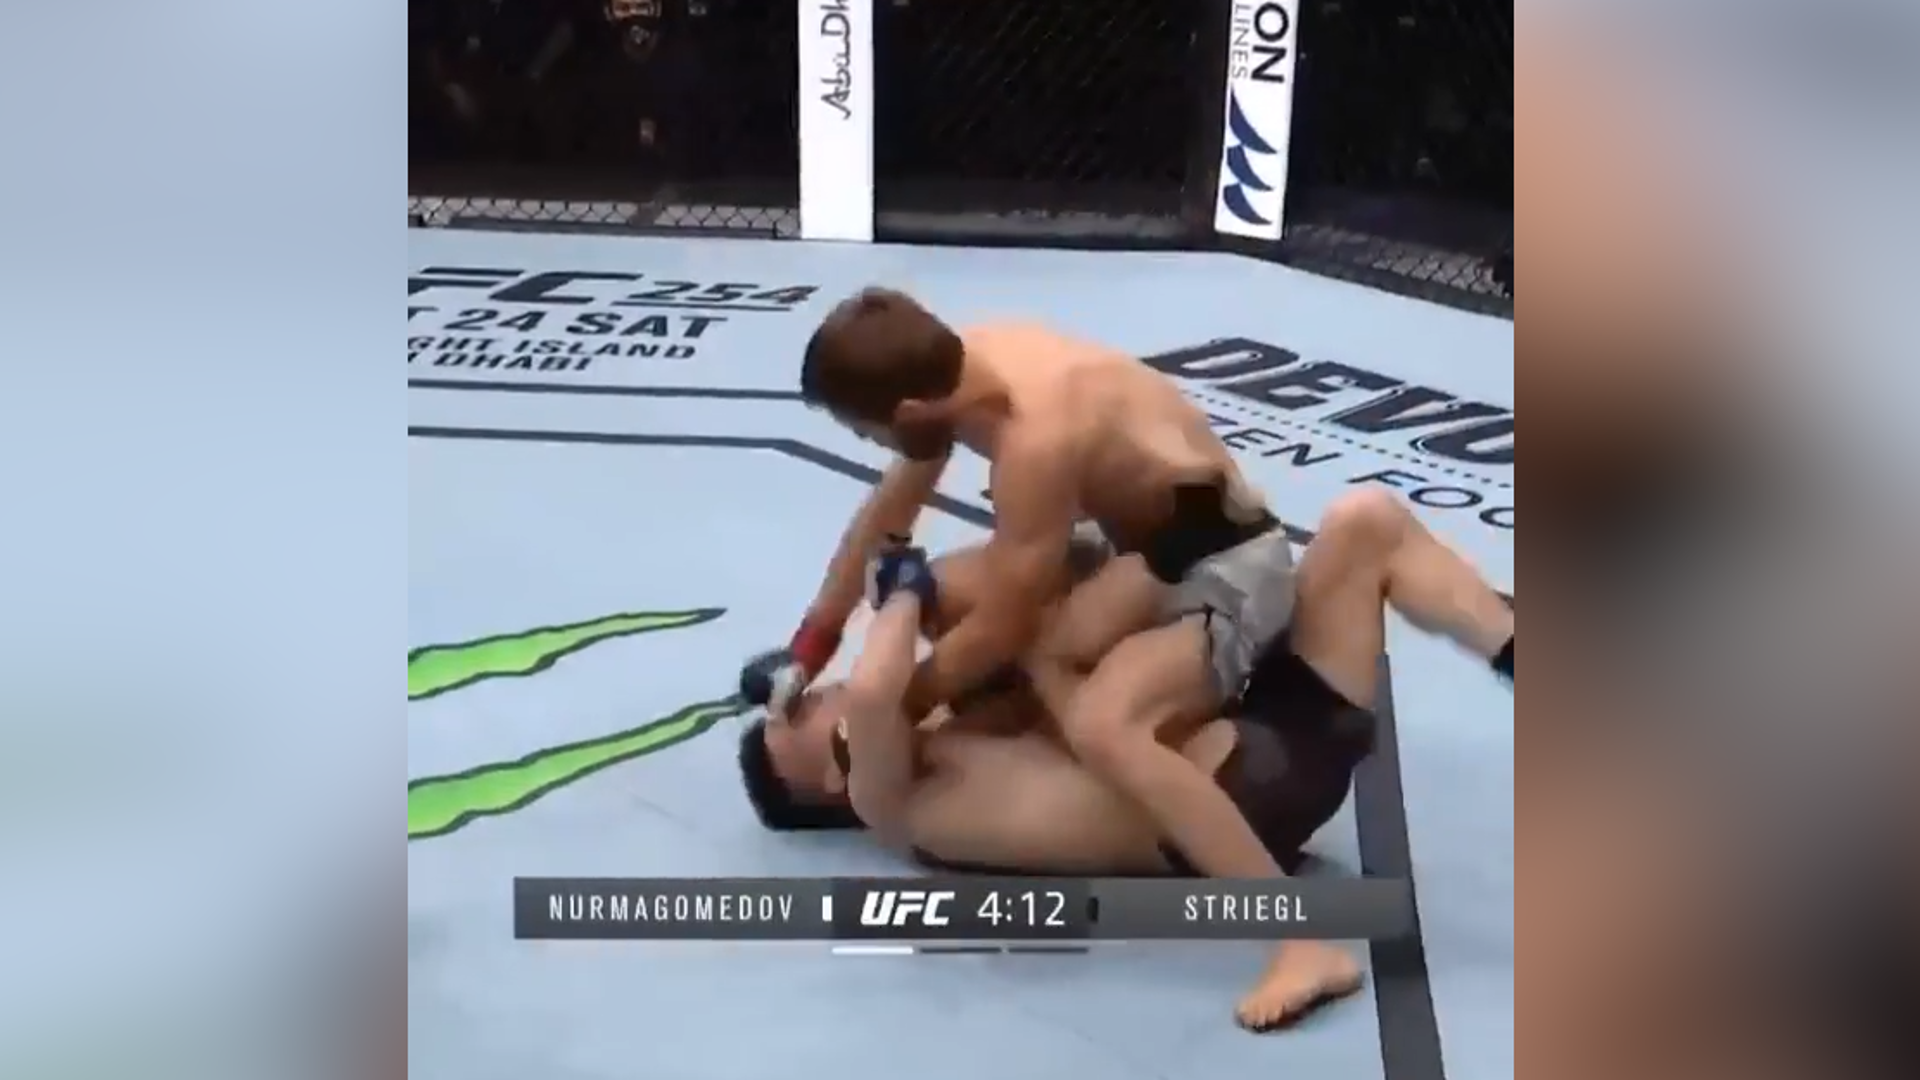 Саид Нурмагомедов выиграл бой в UFC за 51 секунду.